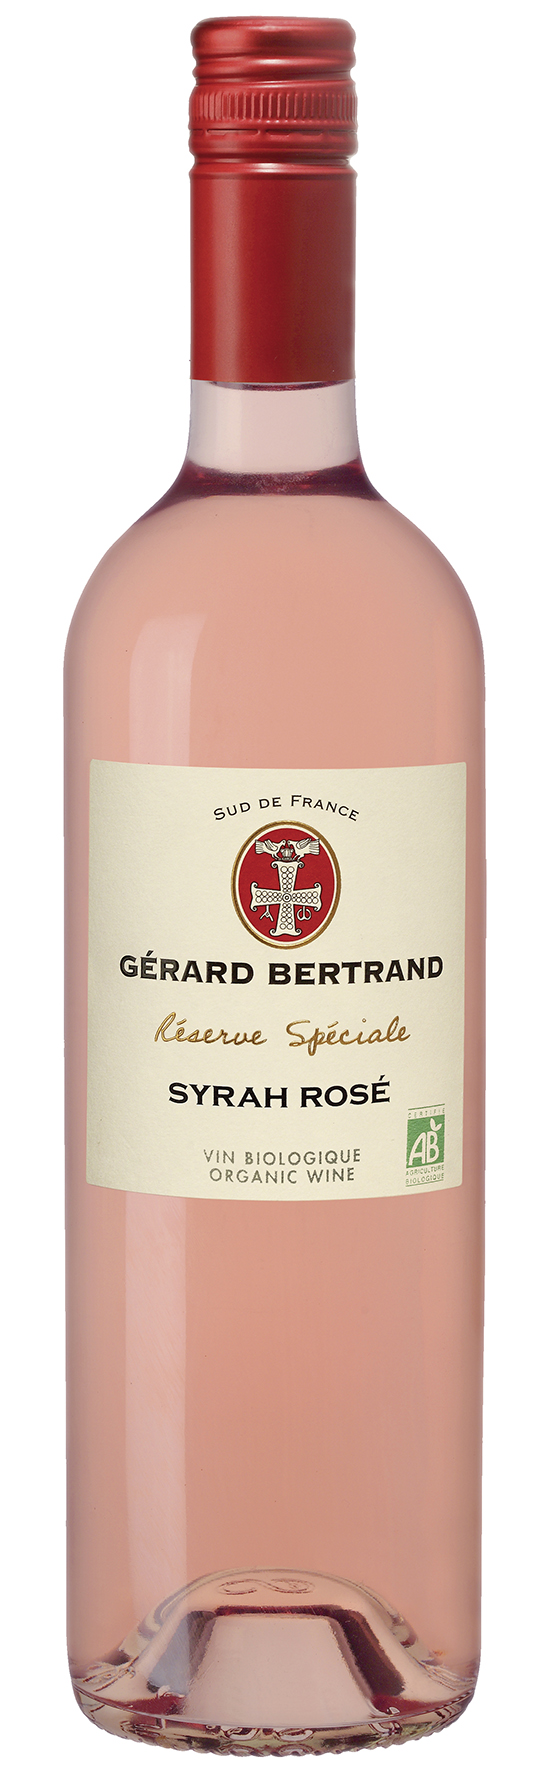 Gérard Bertrand Réserve Spéciale Syrah Rosé 2016